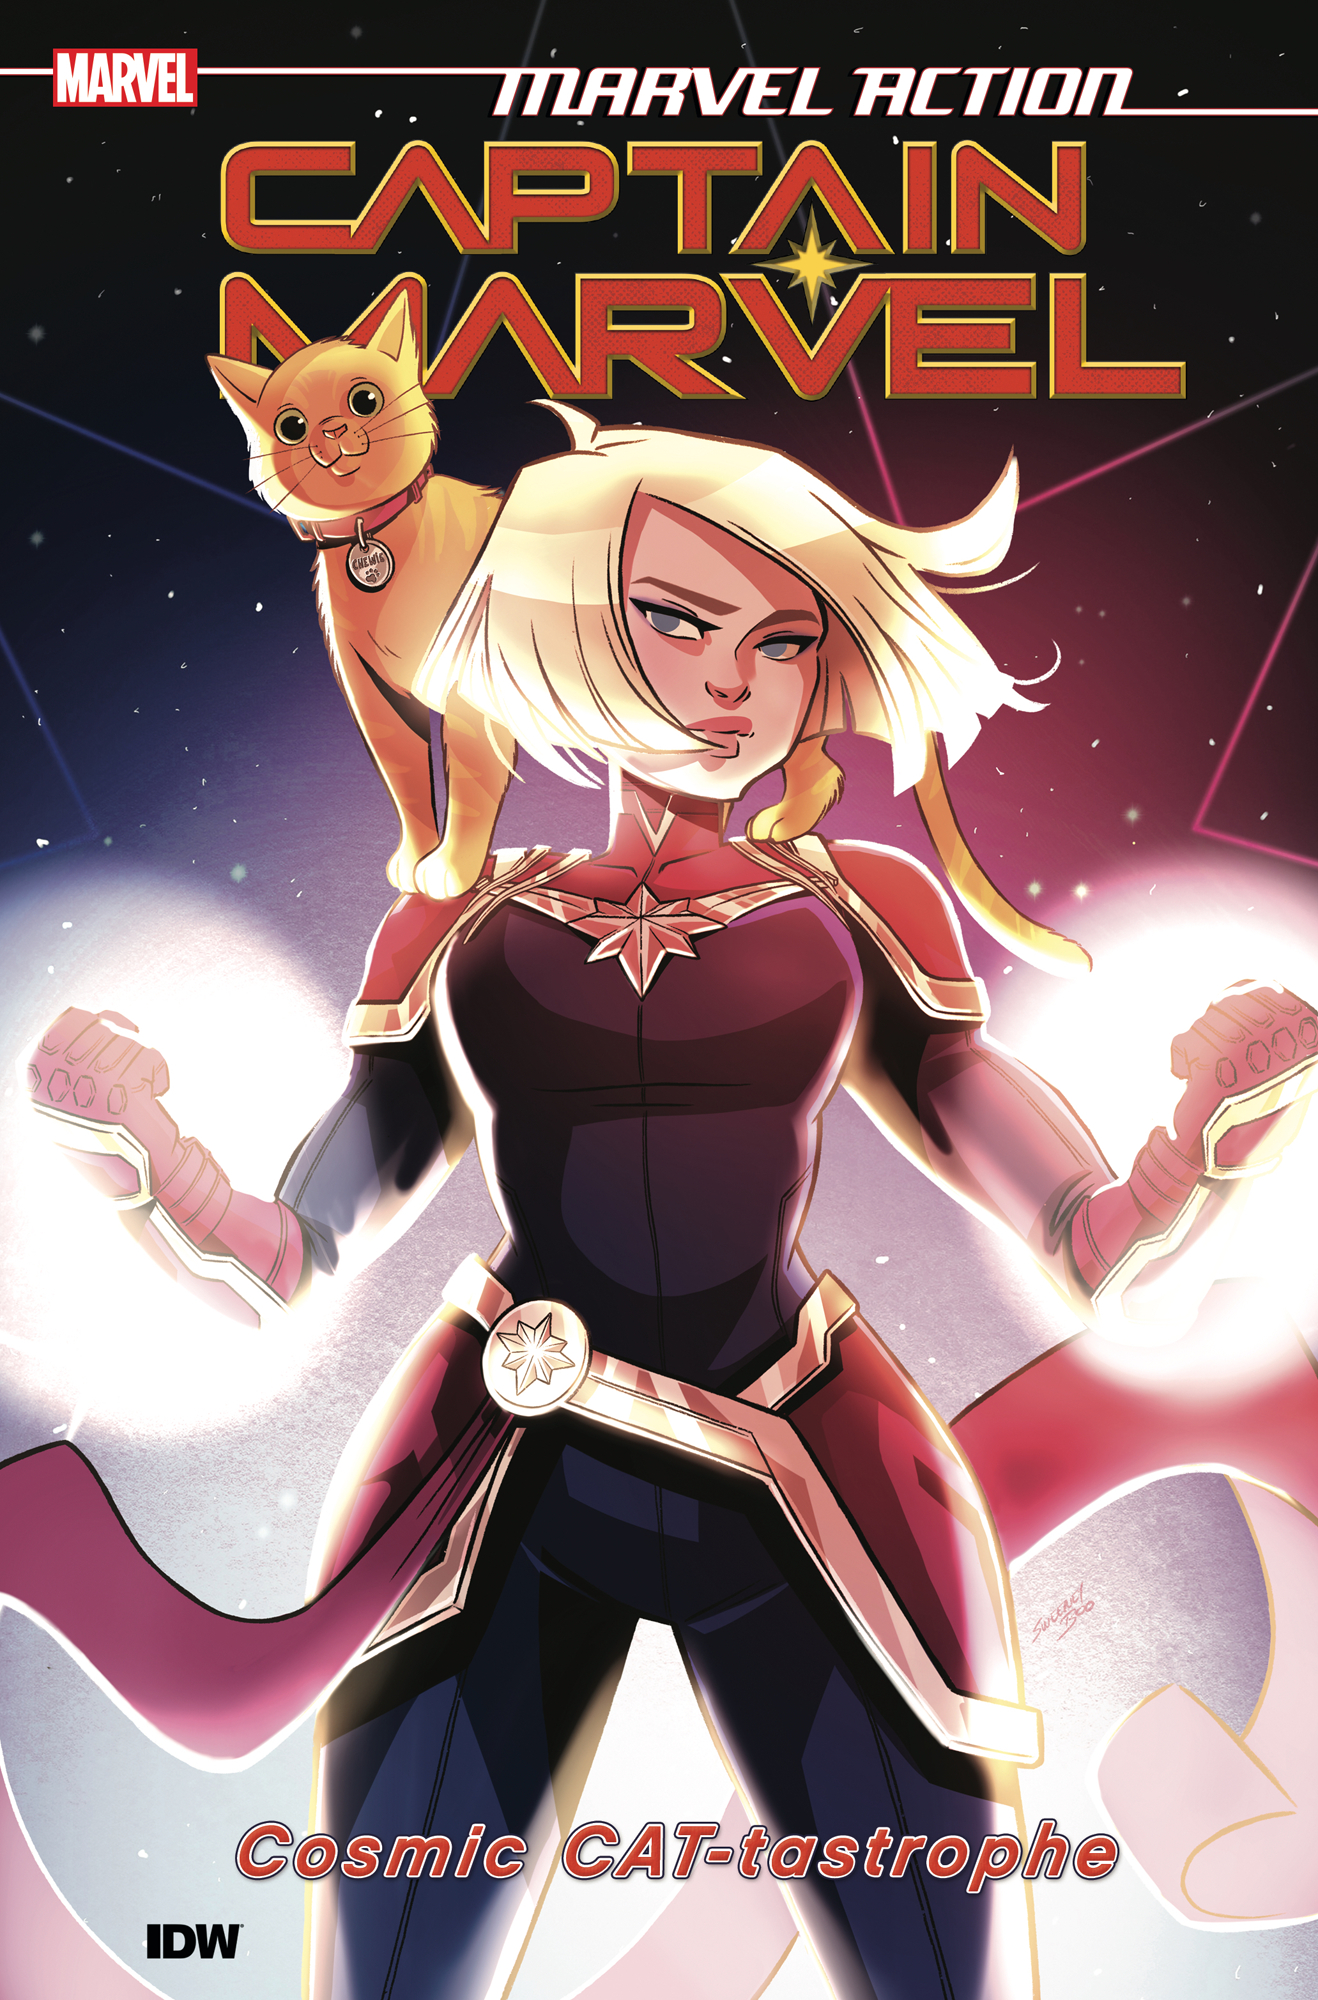 Marvel Action Captain Marvel Graphic Novel Volume 1 Cat-Tastrophe